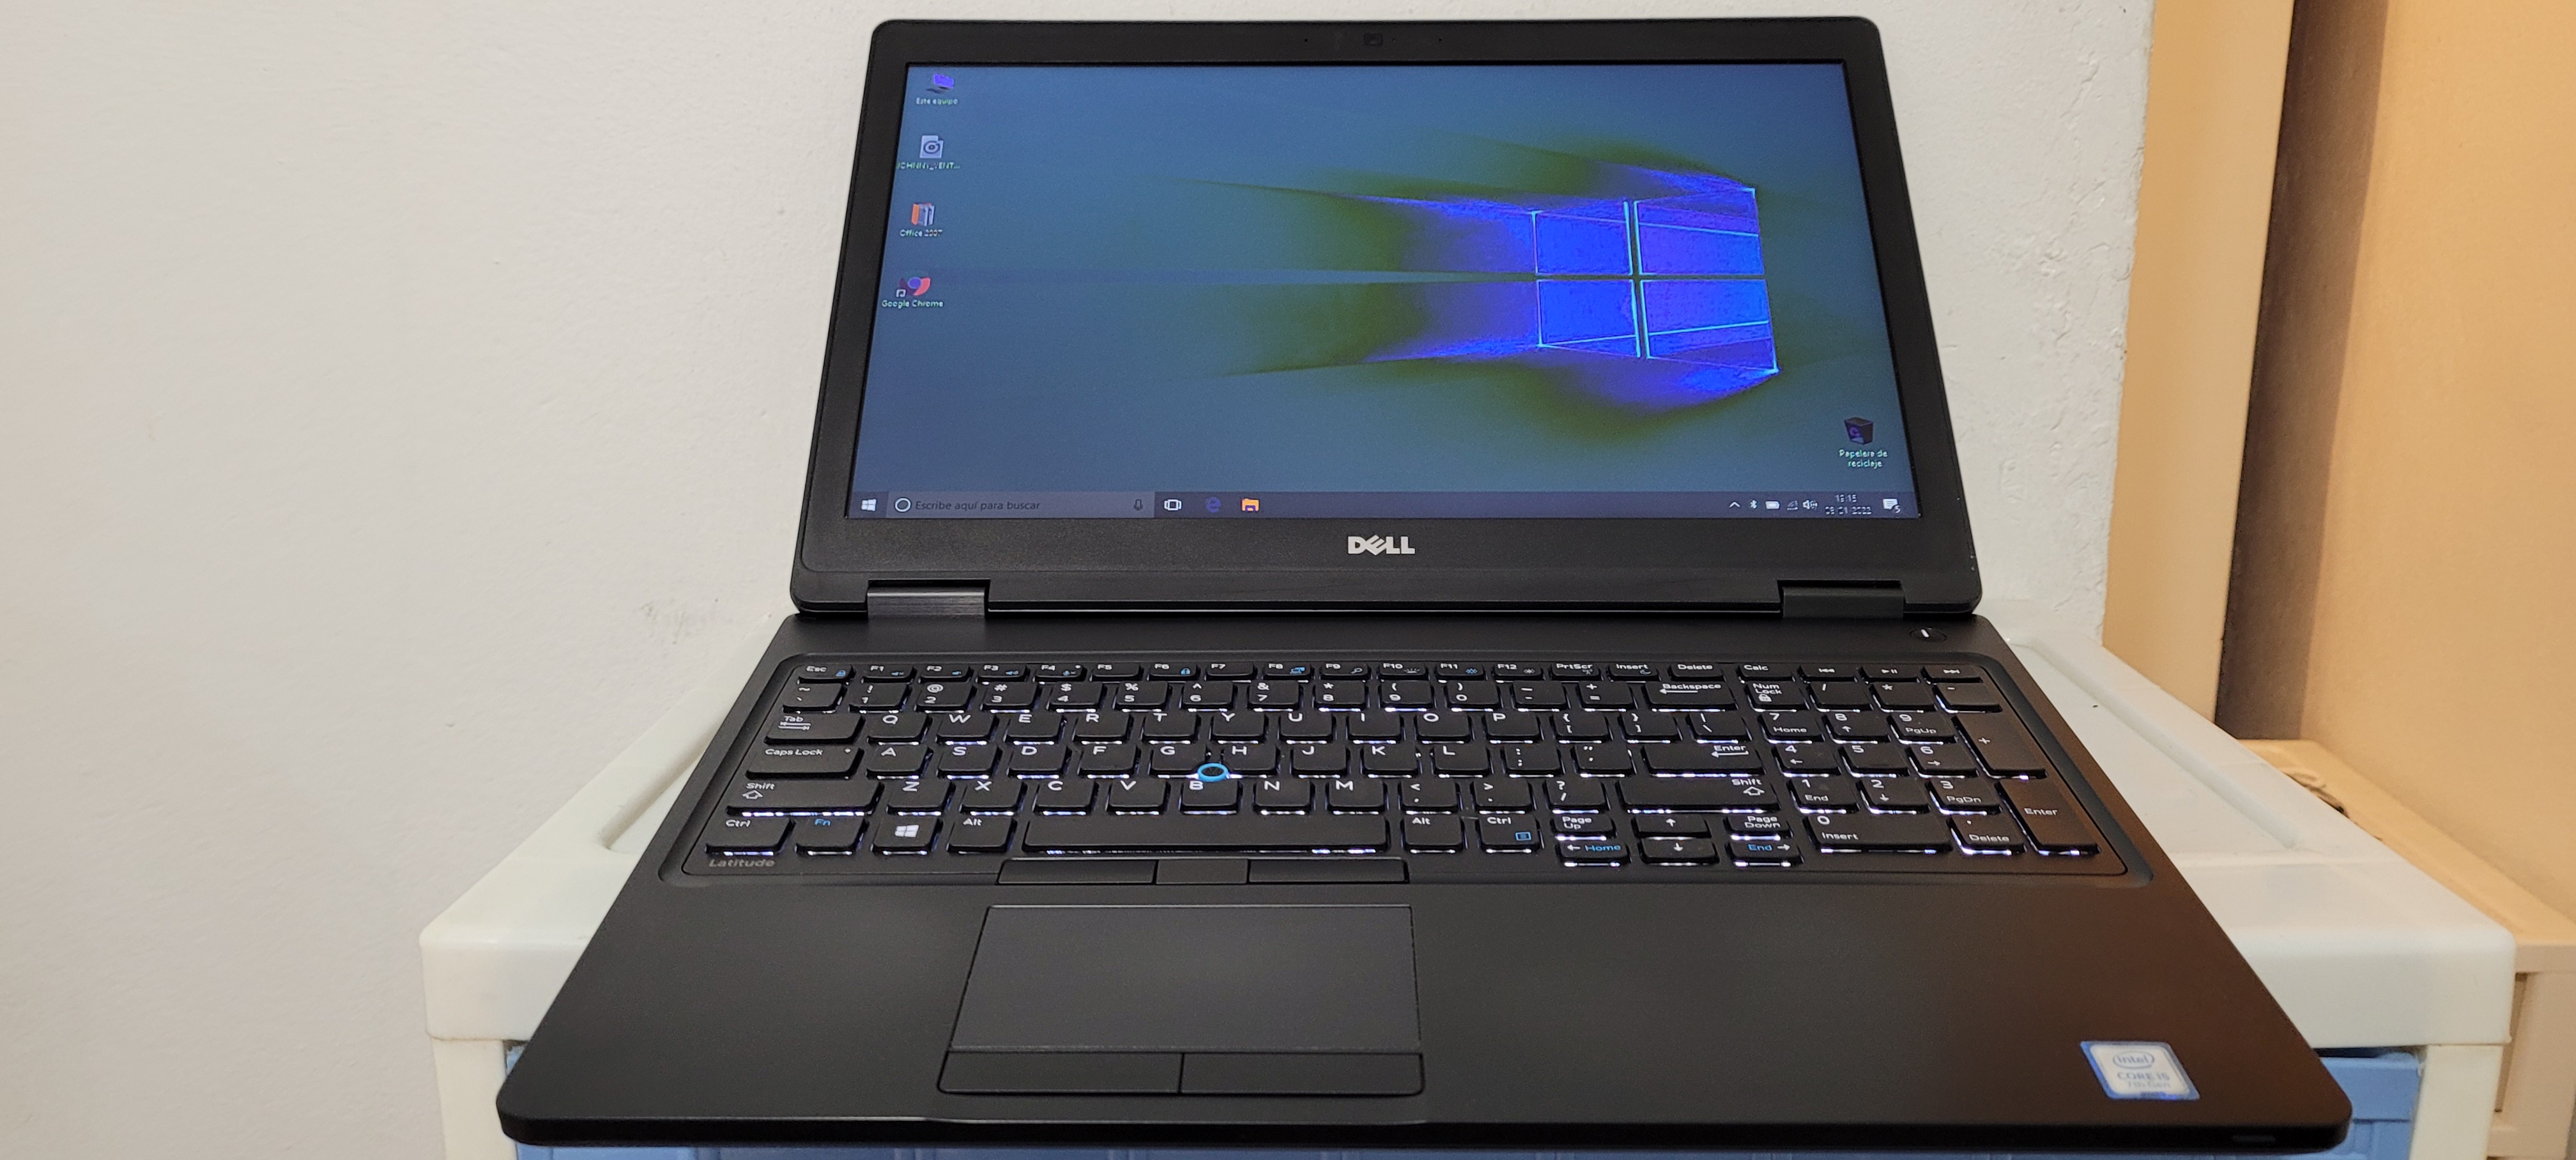 computadoras y laptops - Laptop Dell 5570 17 Pulg Core i7 6ta Ram 16gb Video intel Y Aty Radeon R7 2gb